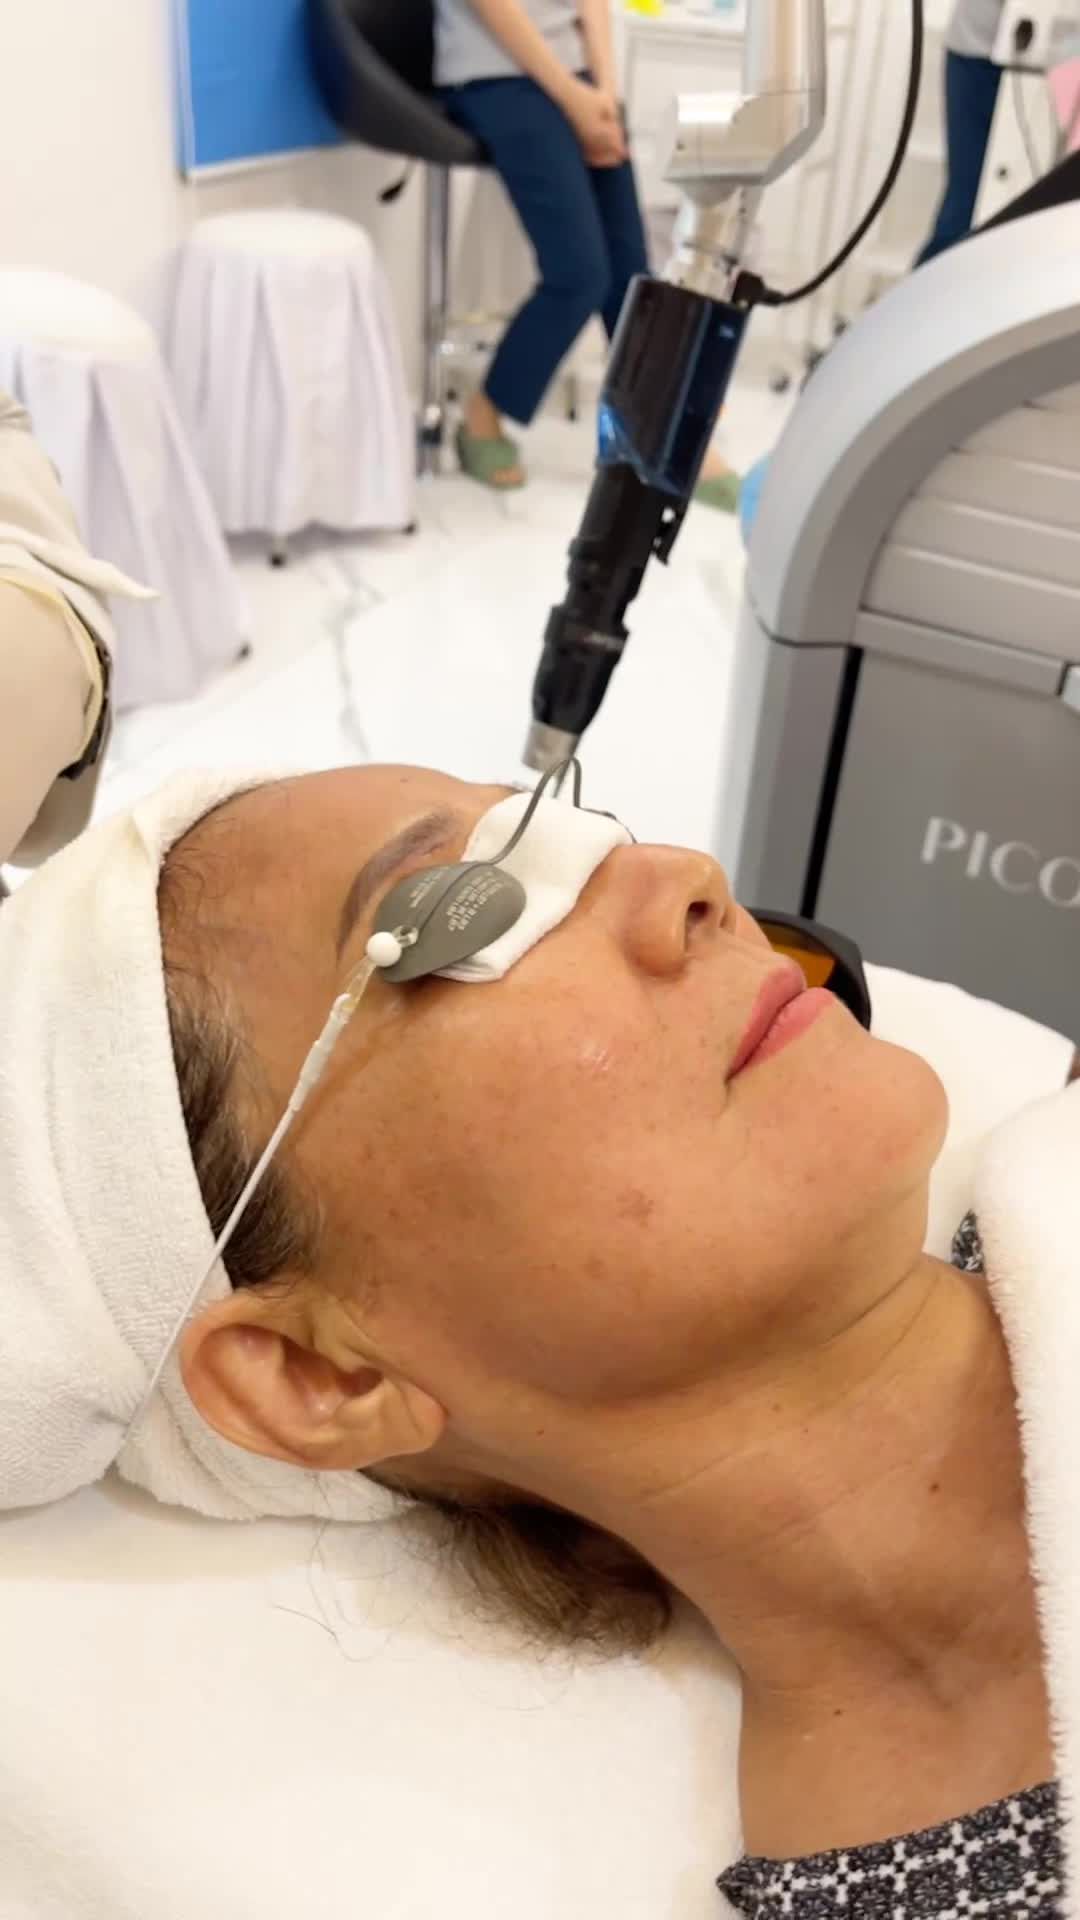 Điều trị tàn nhàng hiểu quả Chỉ 1 lần duy nhất với công nghệ Laser Picosure Pro tại Kangnam